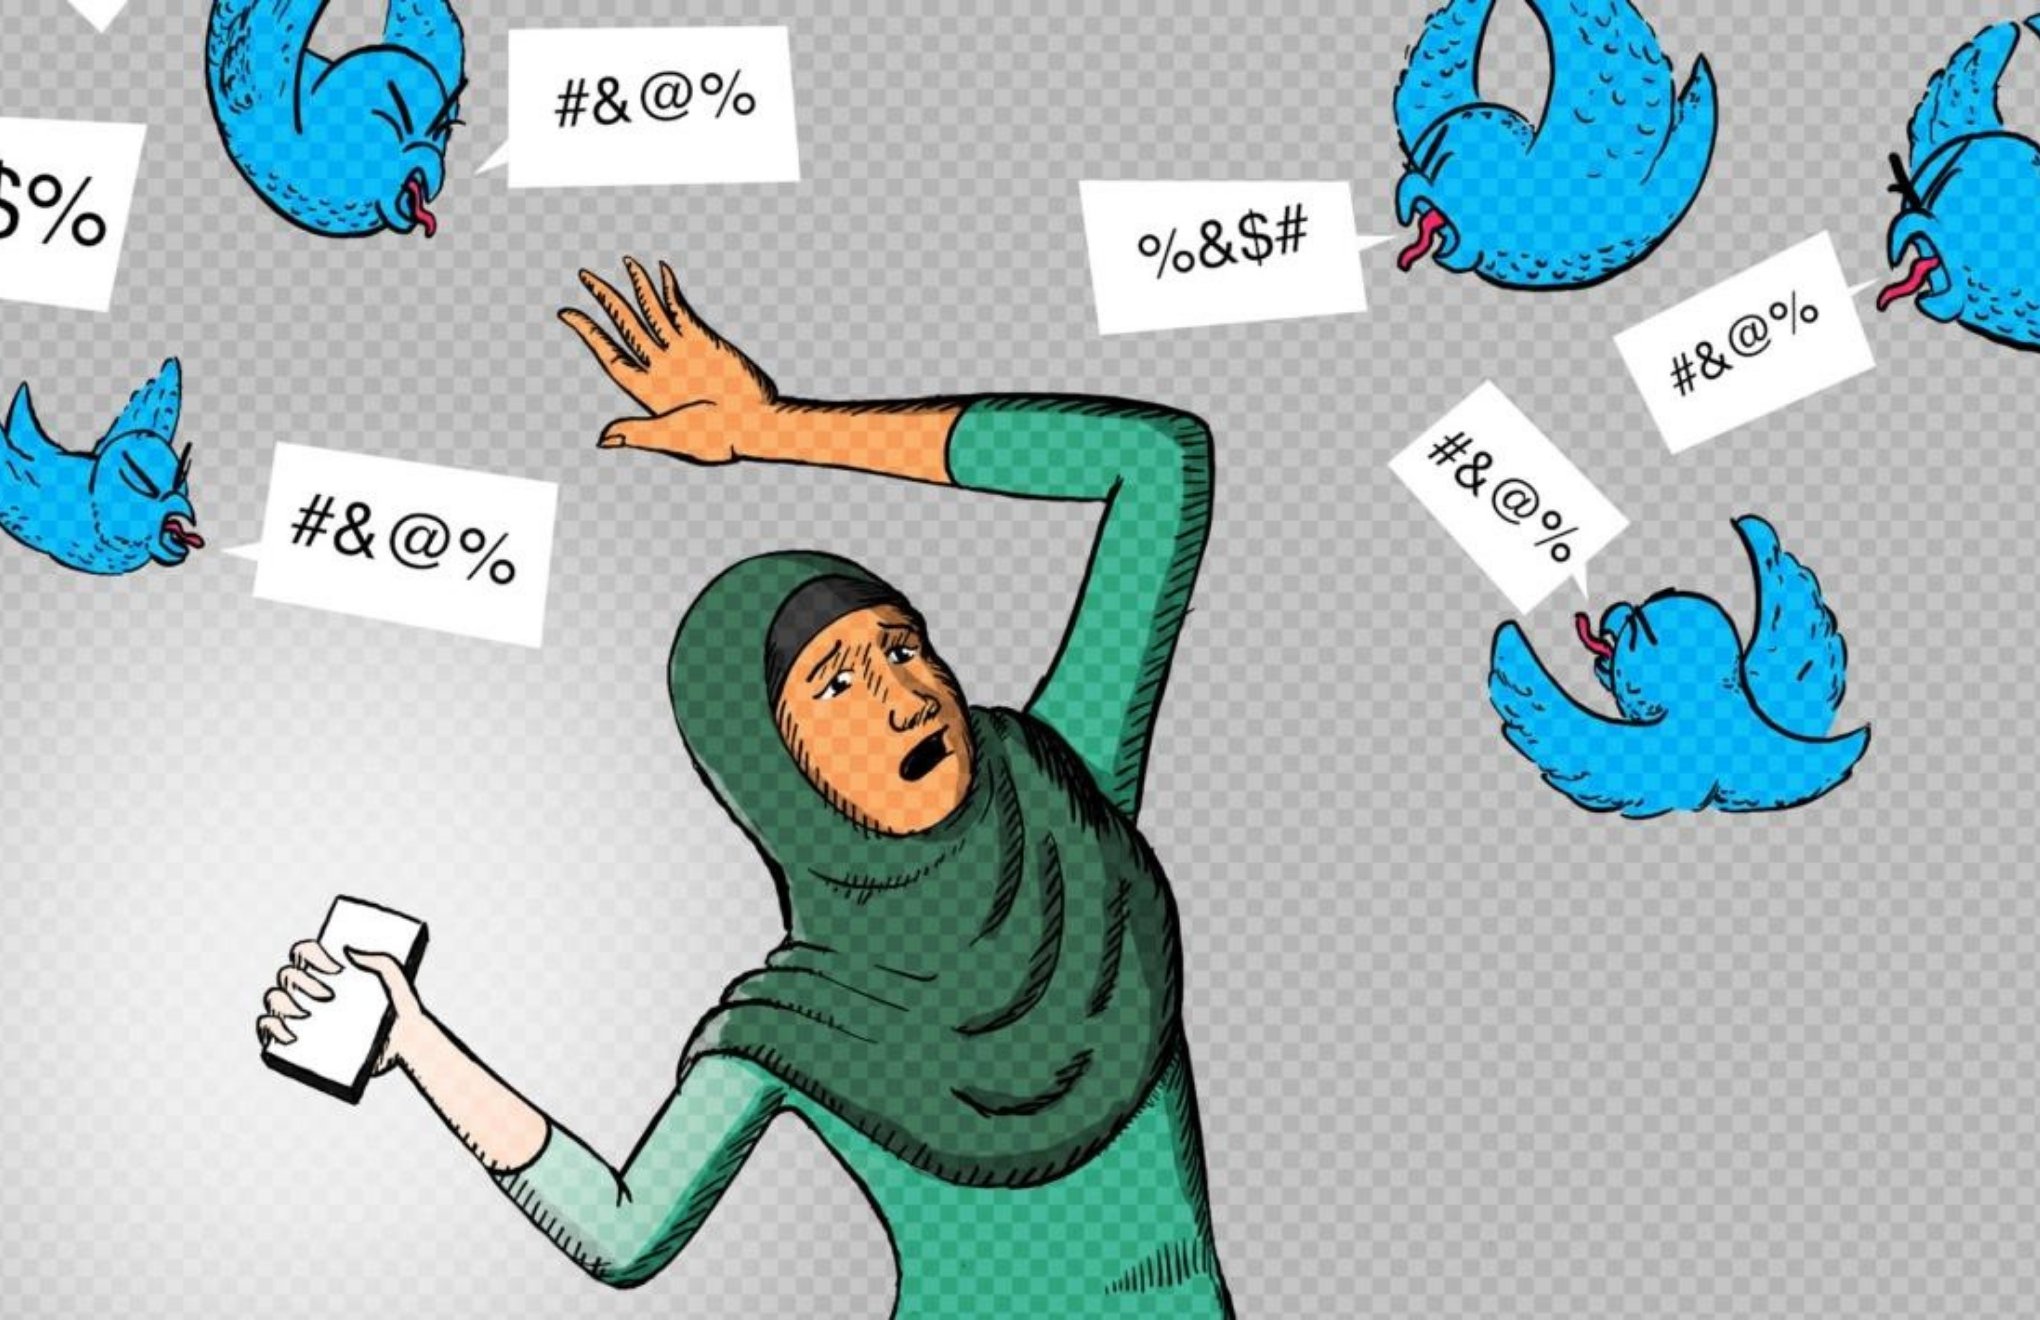 Twitter kadınları korumak konusunda hala yetersiz